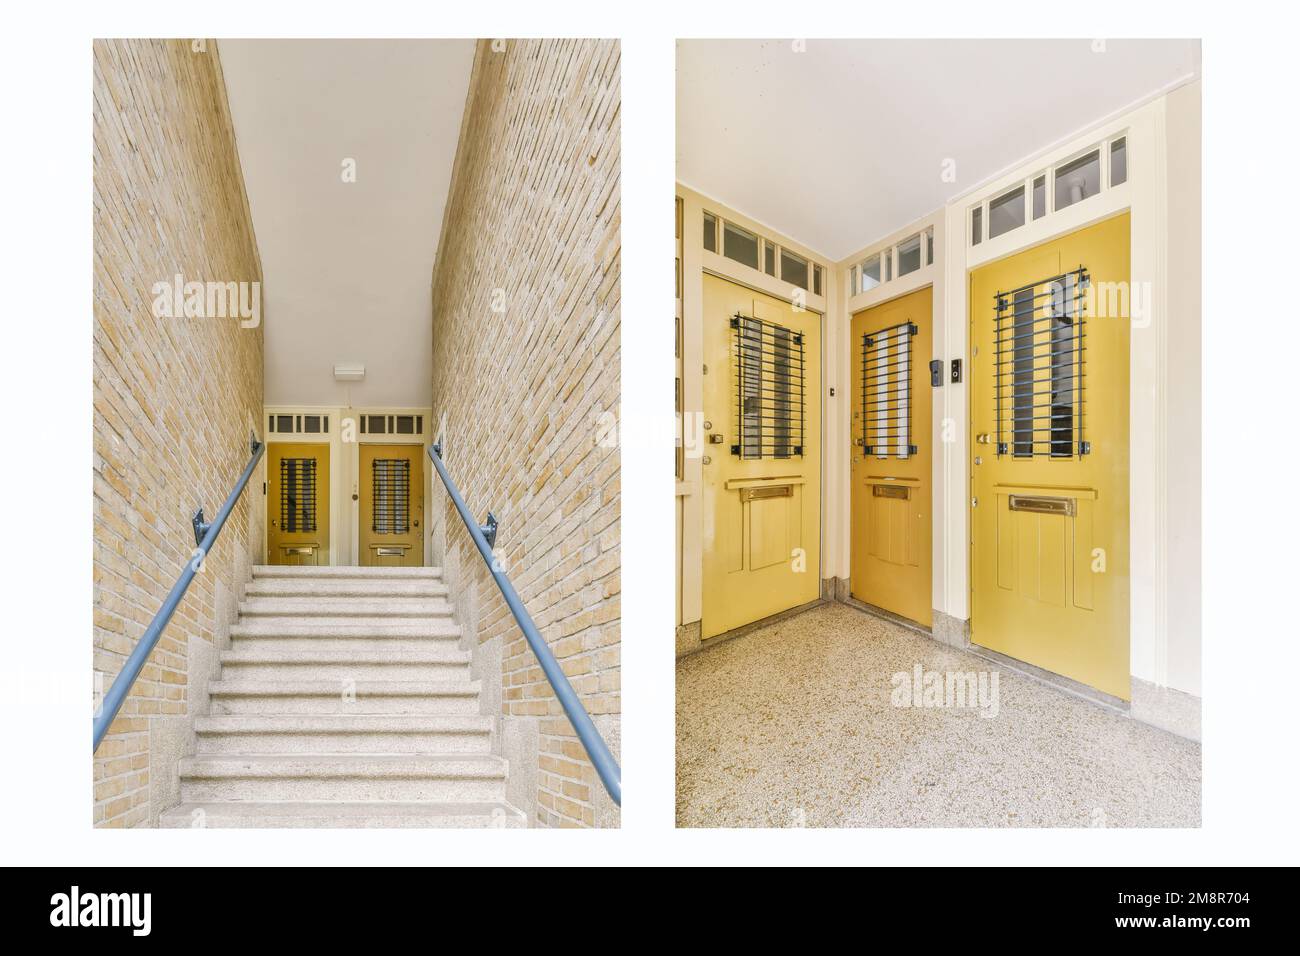 une entrée avec portes jaunes et garniture blanche sur la porte d'entrée, et escaliers menant au deuxième étage Banque D'Images